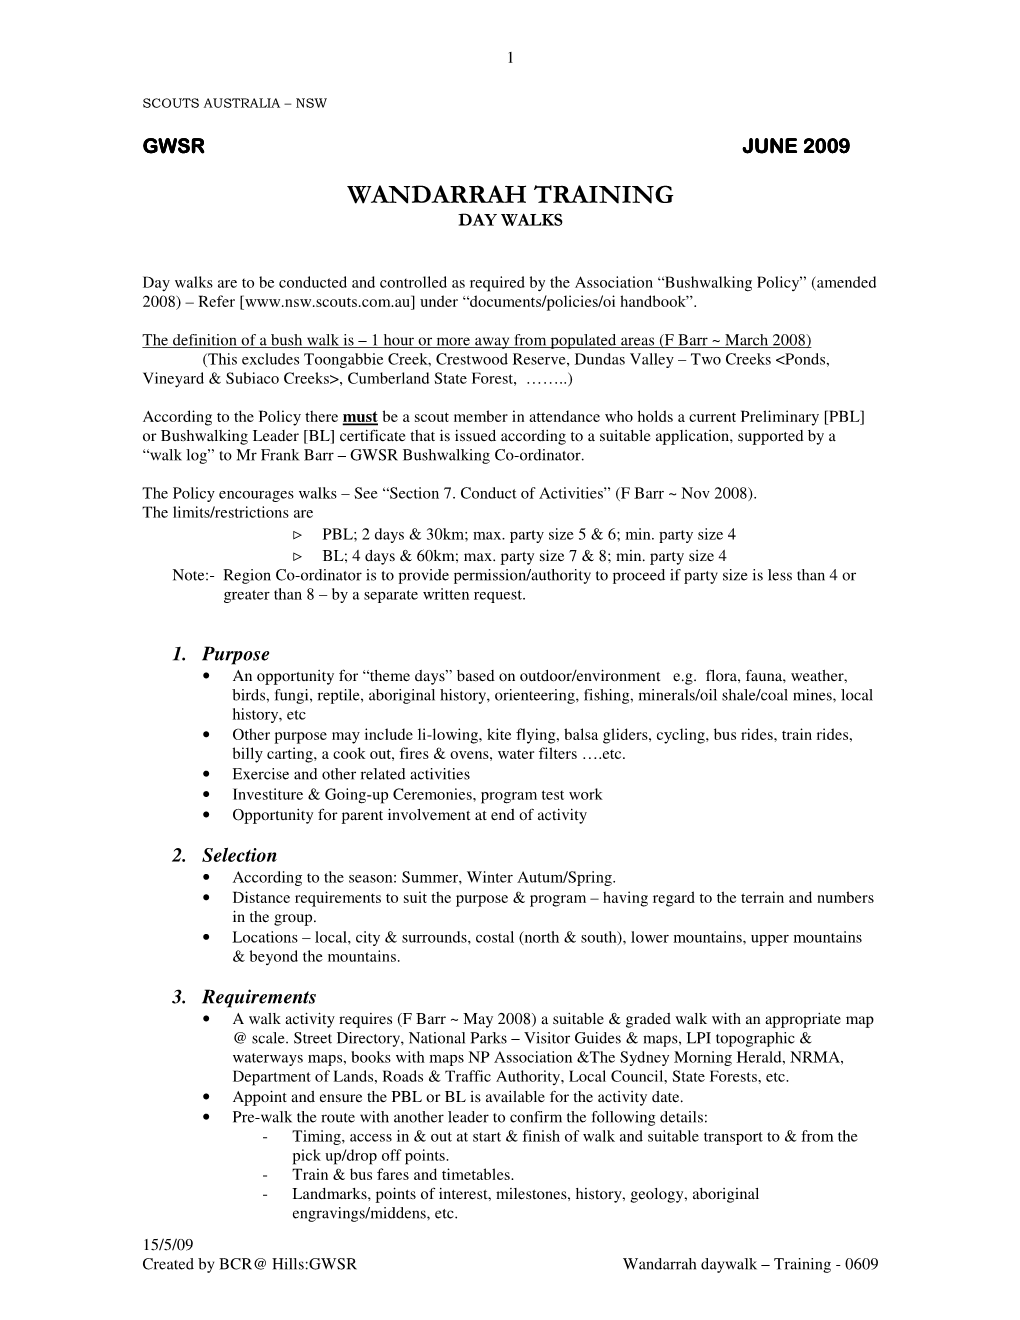 Wandarrah Daywalk Training Notes